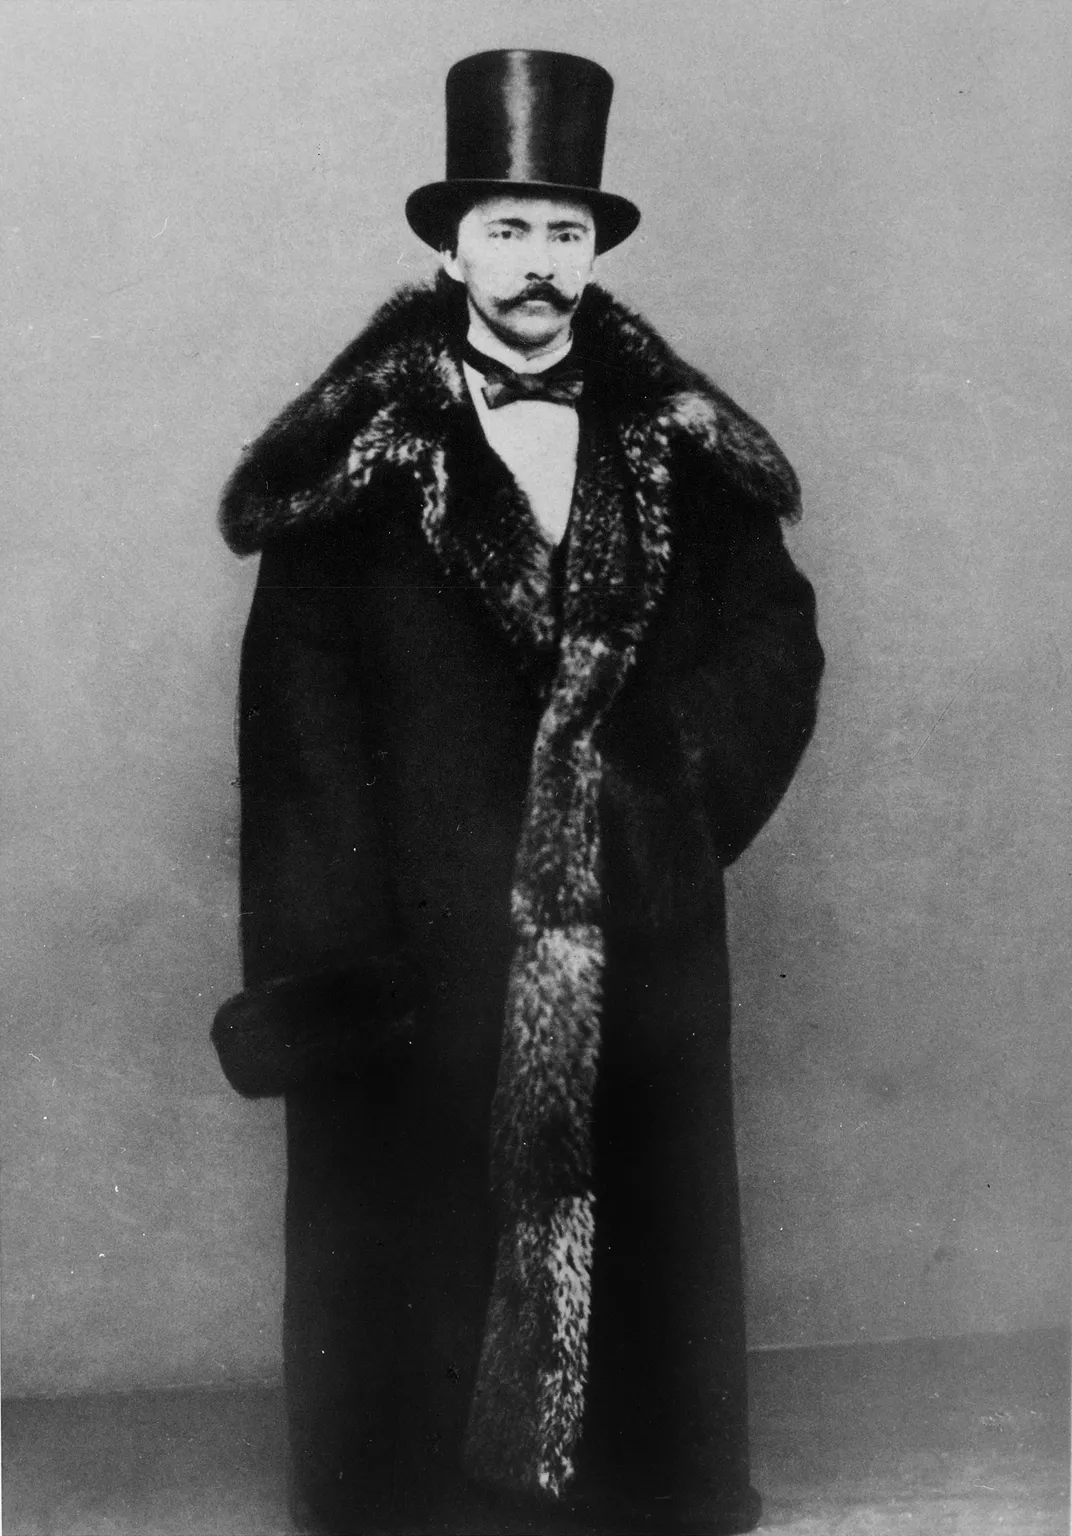 Heinrich Schliemann in 1860, when he was a merchant in St. Petersburg